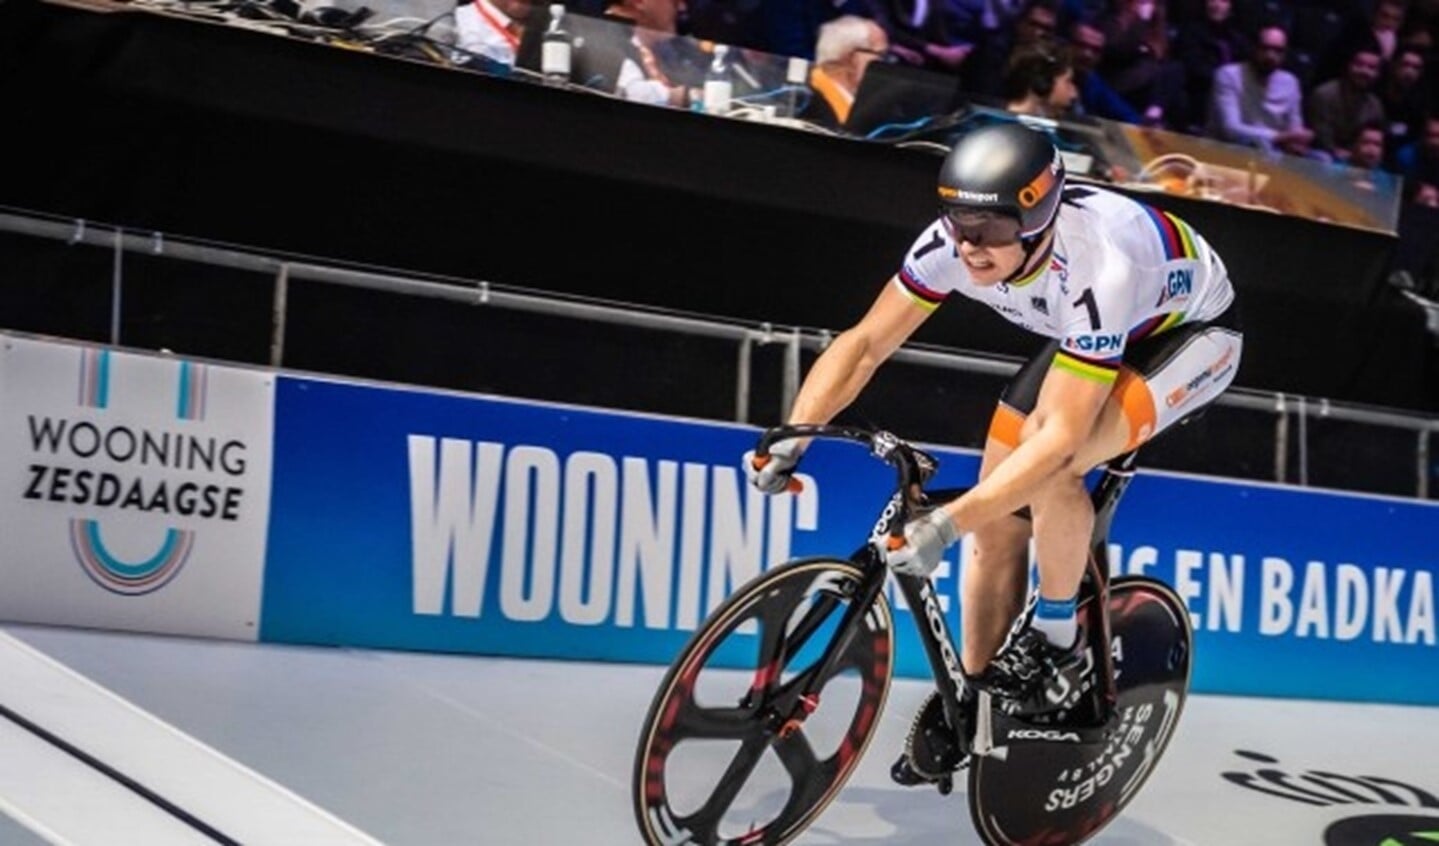 Wereldkampioen sprint Harrie Lavreysen in volle actie tijdens de Zesdaagse van 2019. (Foto: Stephan Tellier)